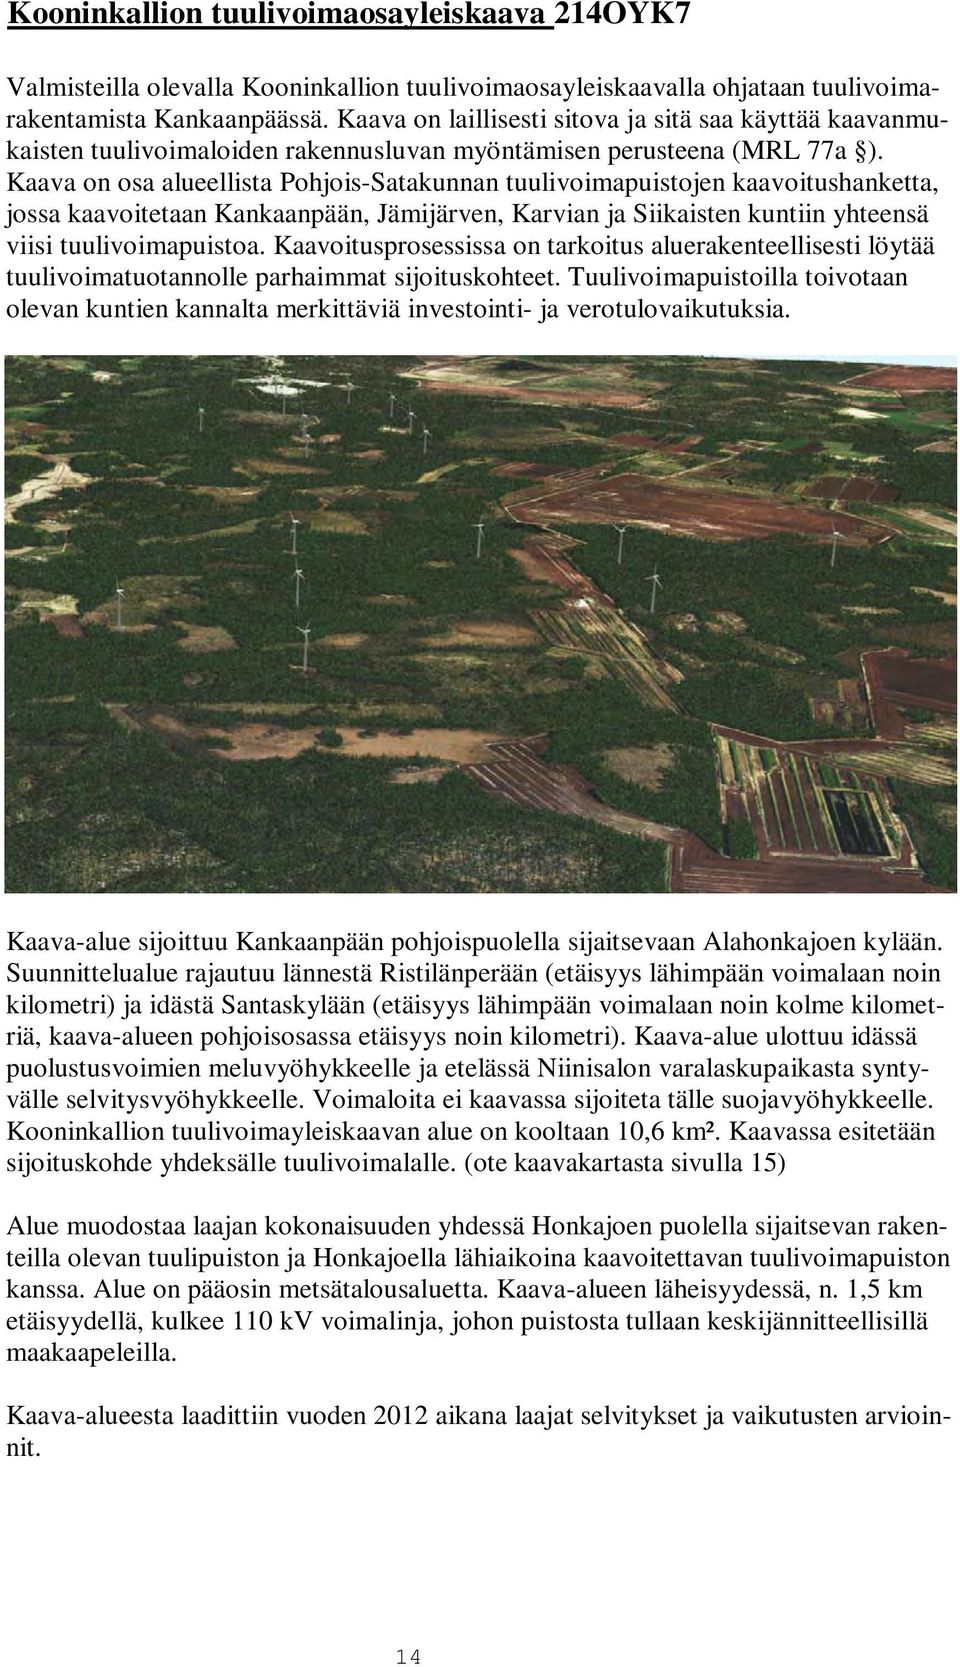 Kaava on osa alueellista Pohjois-Satakunnan tuulivoimapuistojen kaavoitushanketta, jossa kaavoitetaan Kankaanpään, Jämijärven, Karvian ja Siikaisten kuntiin yhteensä viisi tuulivoimapuistoa.